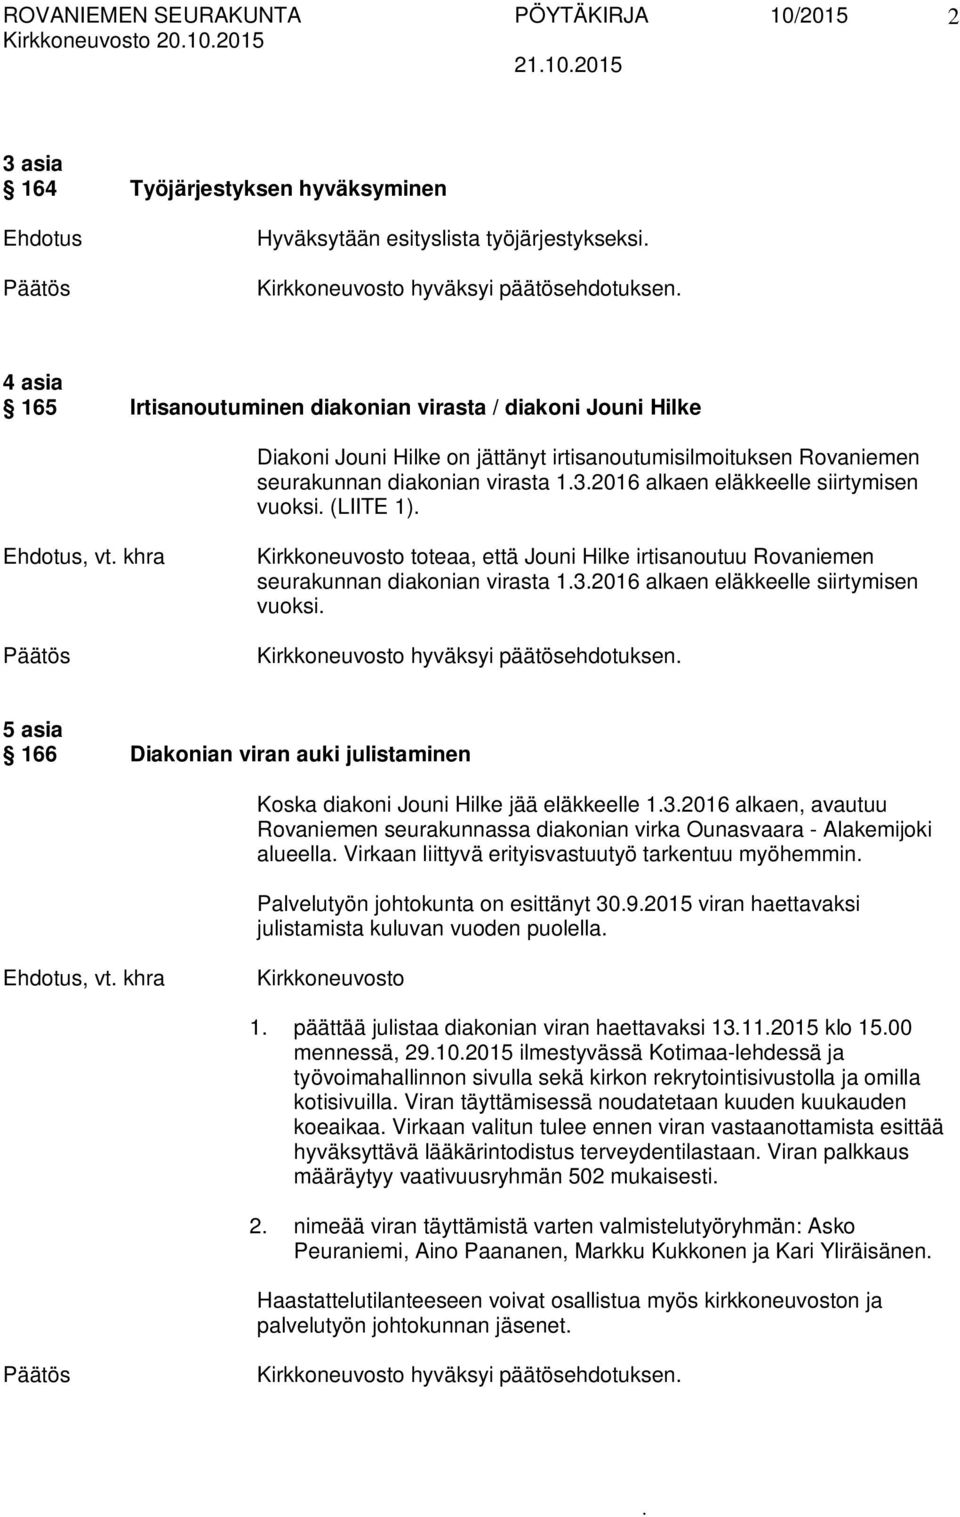 Ehdotus, vt khra Kirkkoneuvosto toteaa, että Jouni Hilke irtisanoutuu Rovaniemen seurakunnan diakonian virasta 132016 alkaen eläkkeelle siirtymisen vuoksi Kirkkoneuvosto hyväksyi päätösehdotuksen 5